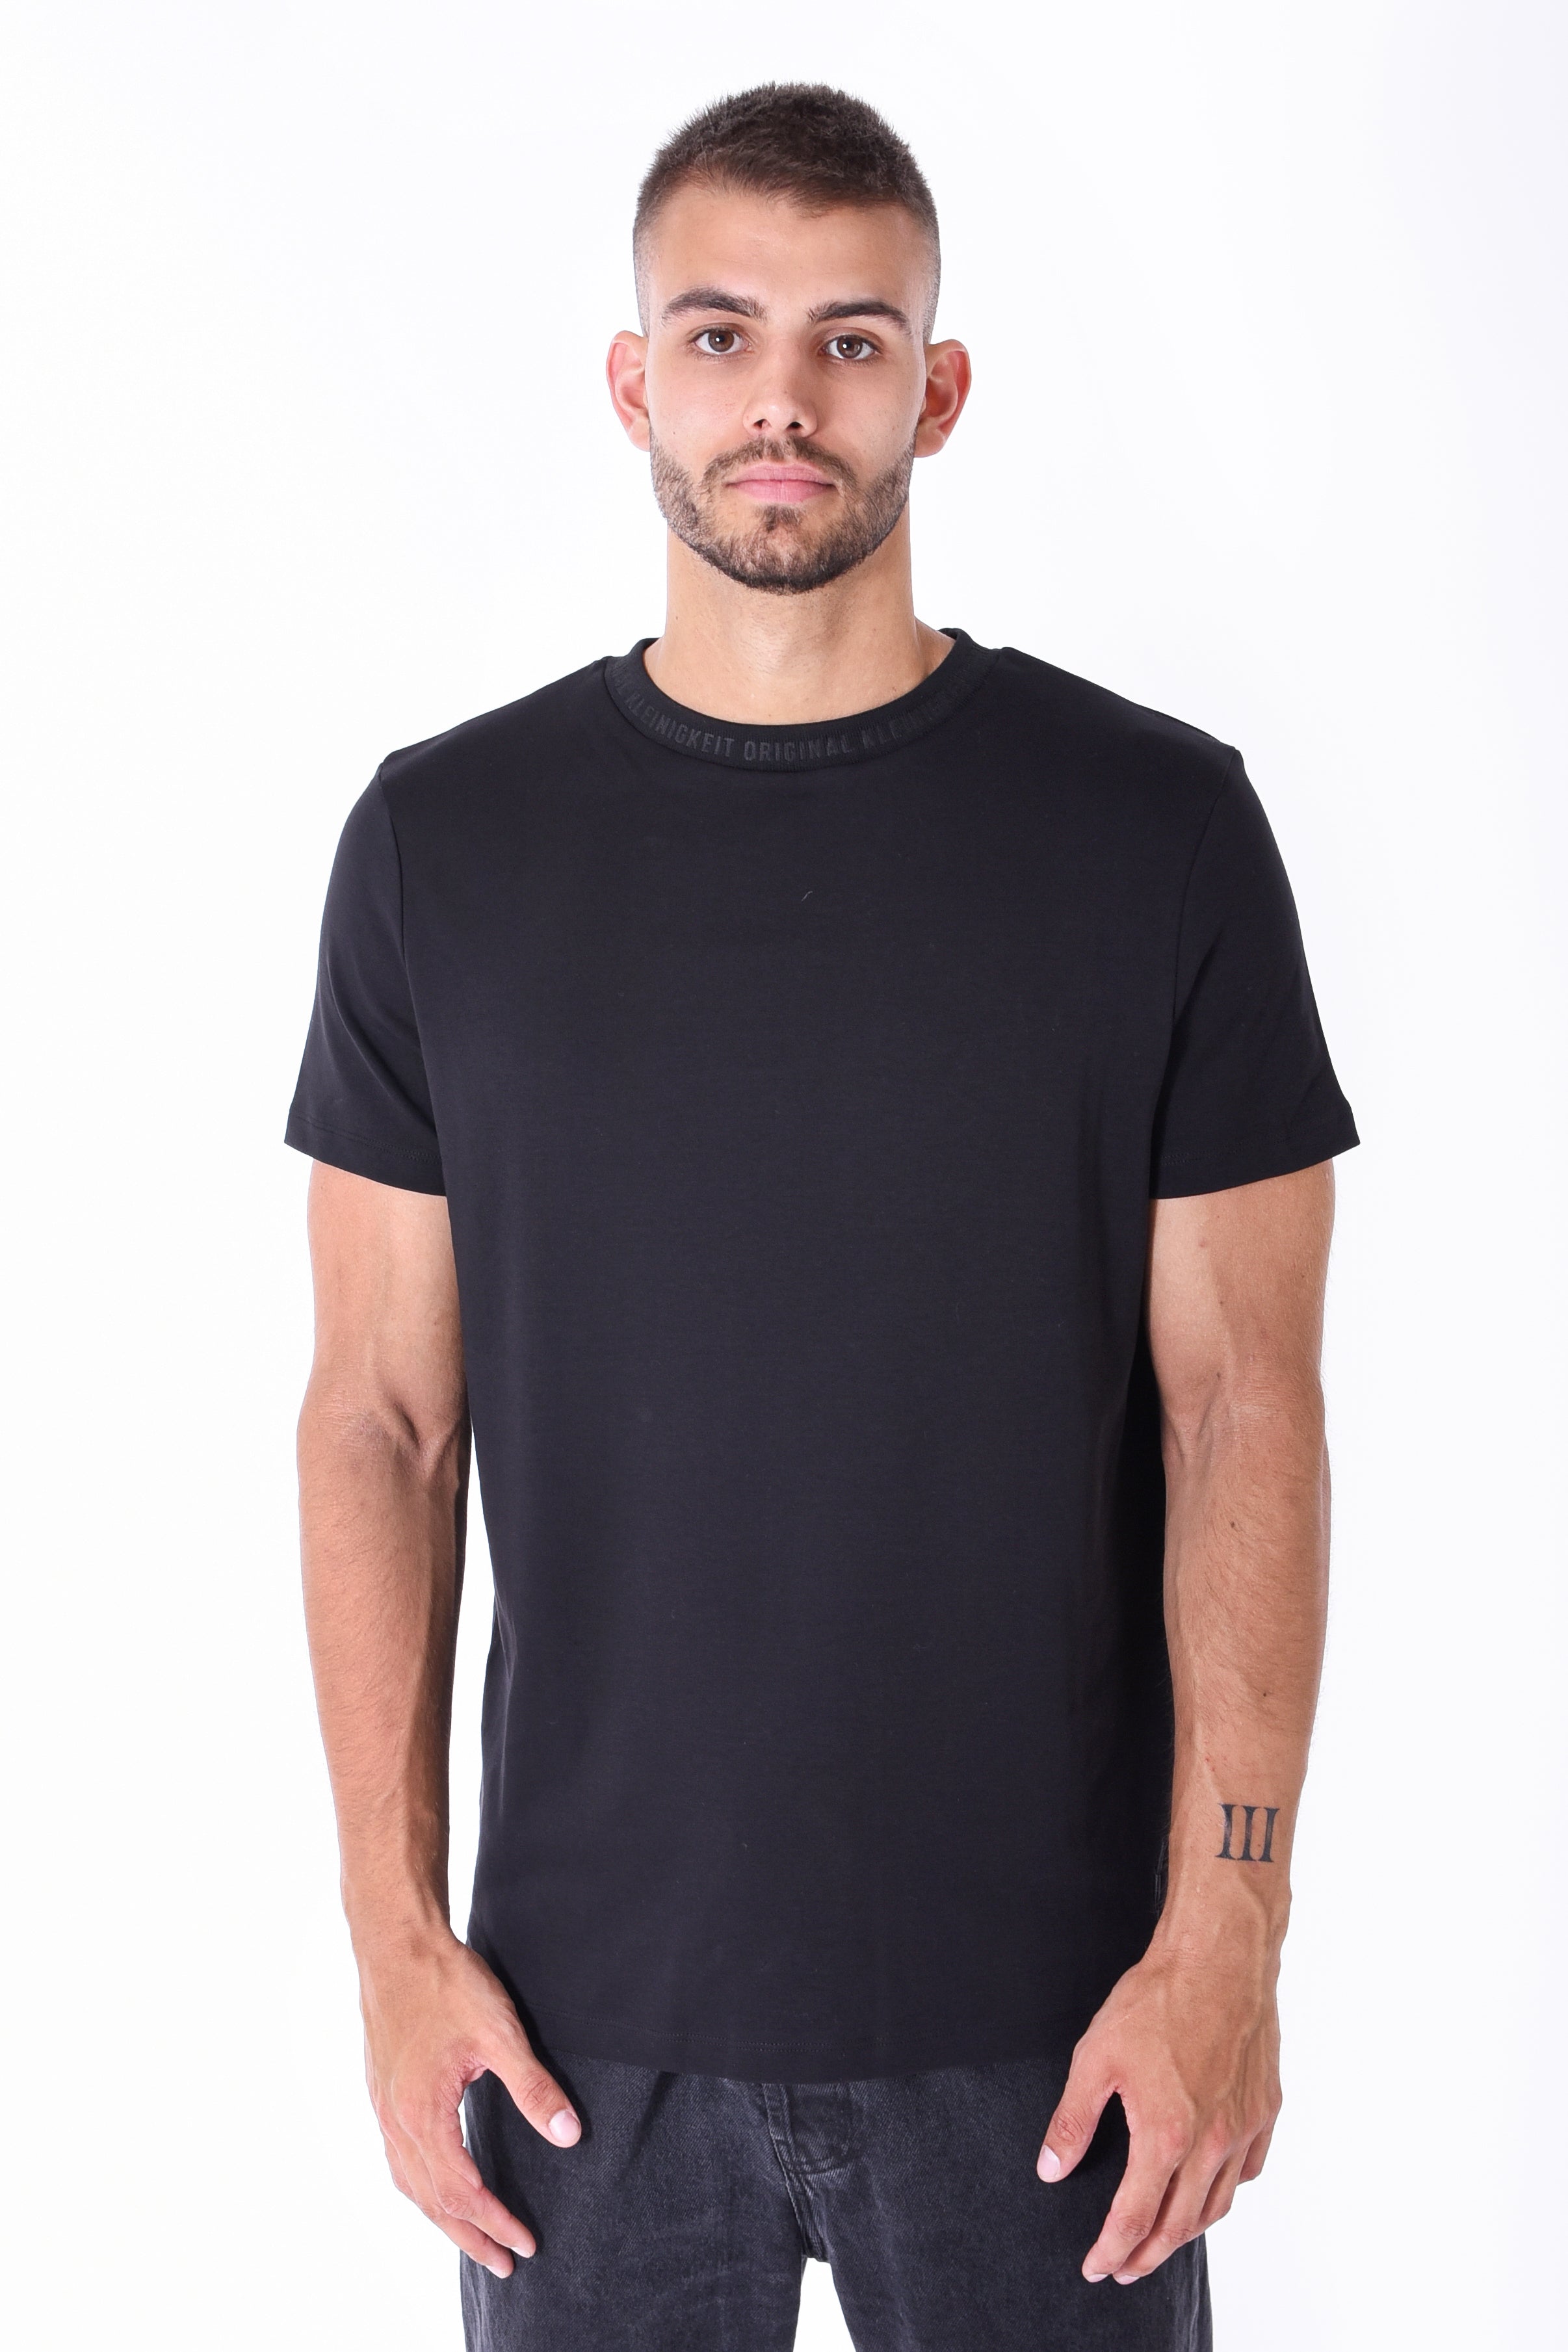 Kleinigkeit | T-Shirt Roundcut "Unterragendes Shirt" | black